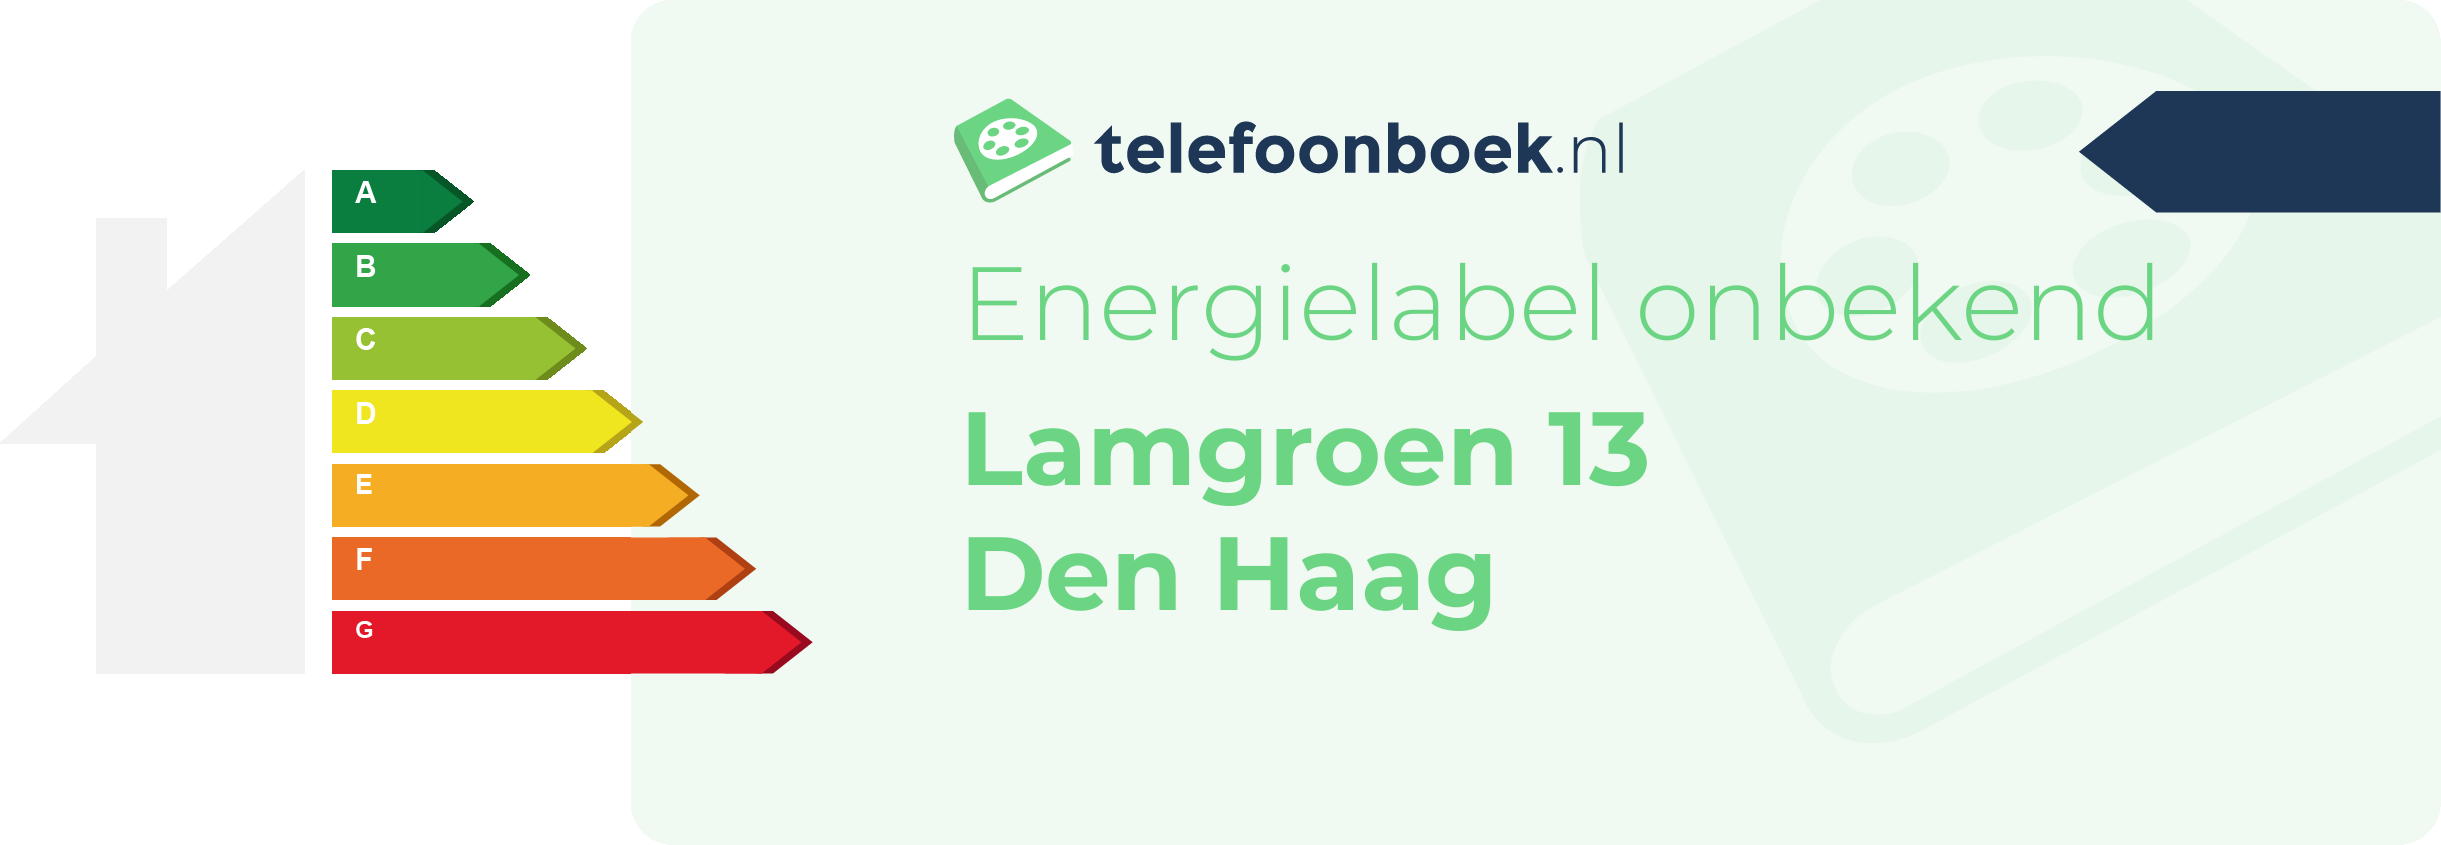 Energielabel Lamgroen 13 Den Haag